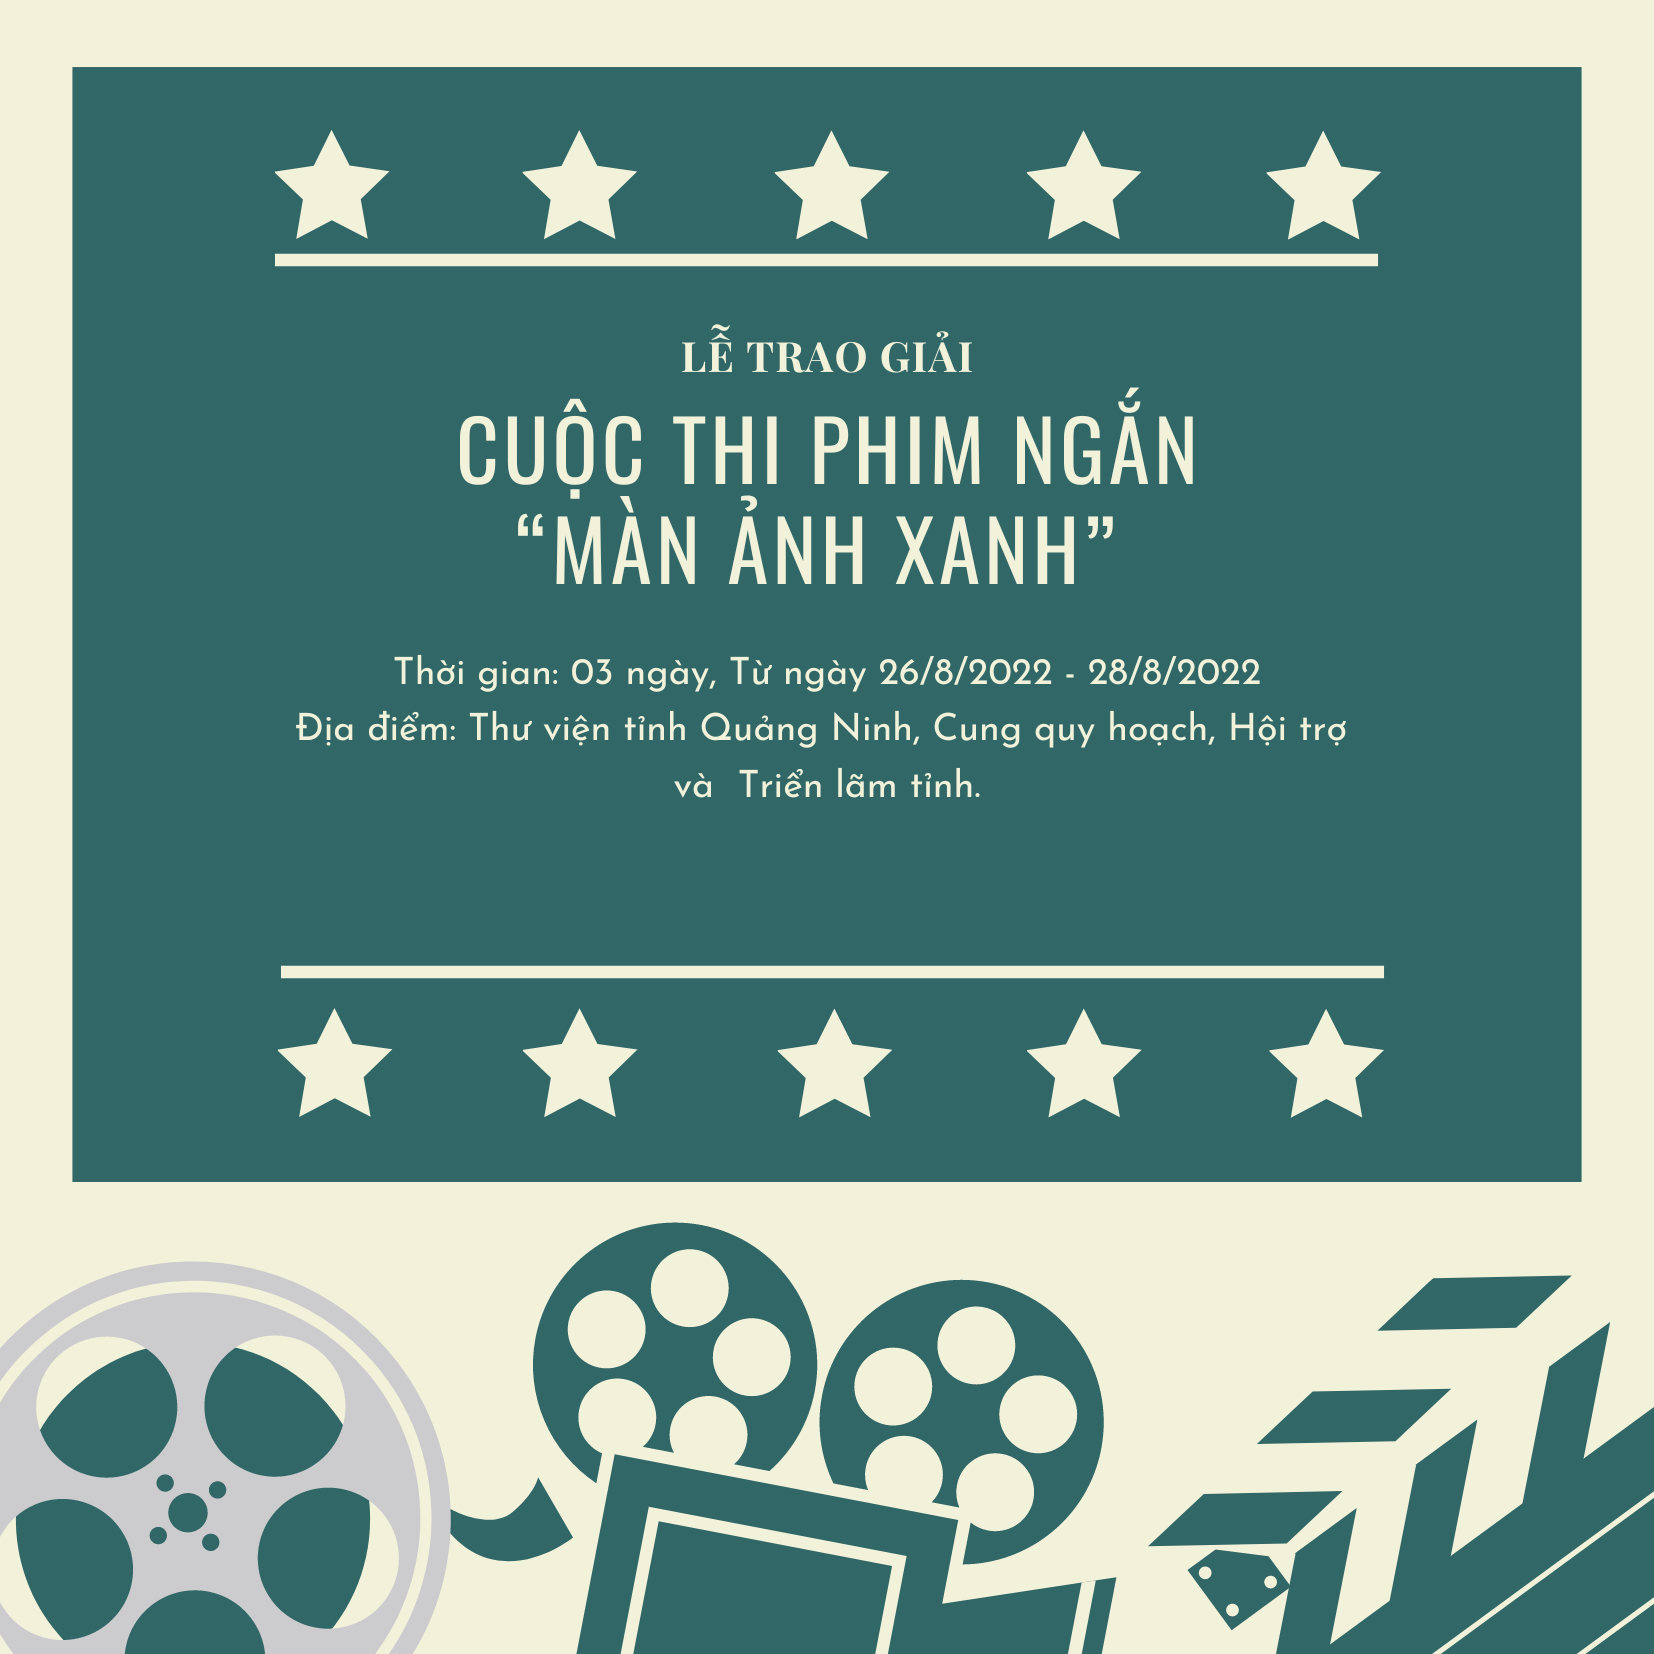 Lễ trao giải cuộc thi phim ngắn “Màn ảnh Xanh” tại tỉnh Quảng Ninh năm 2022